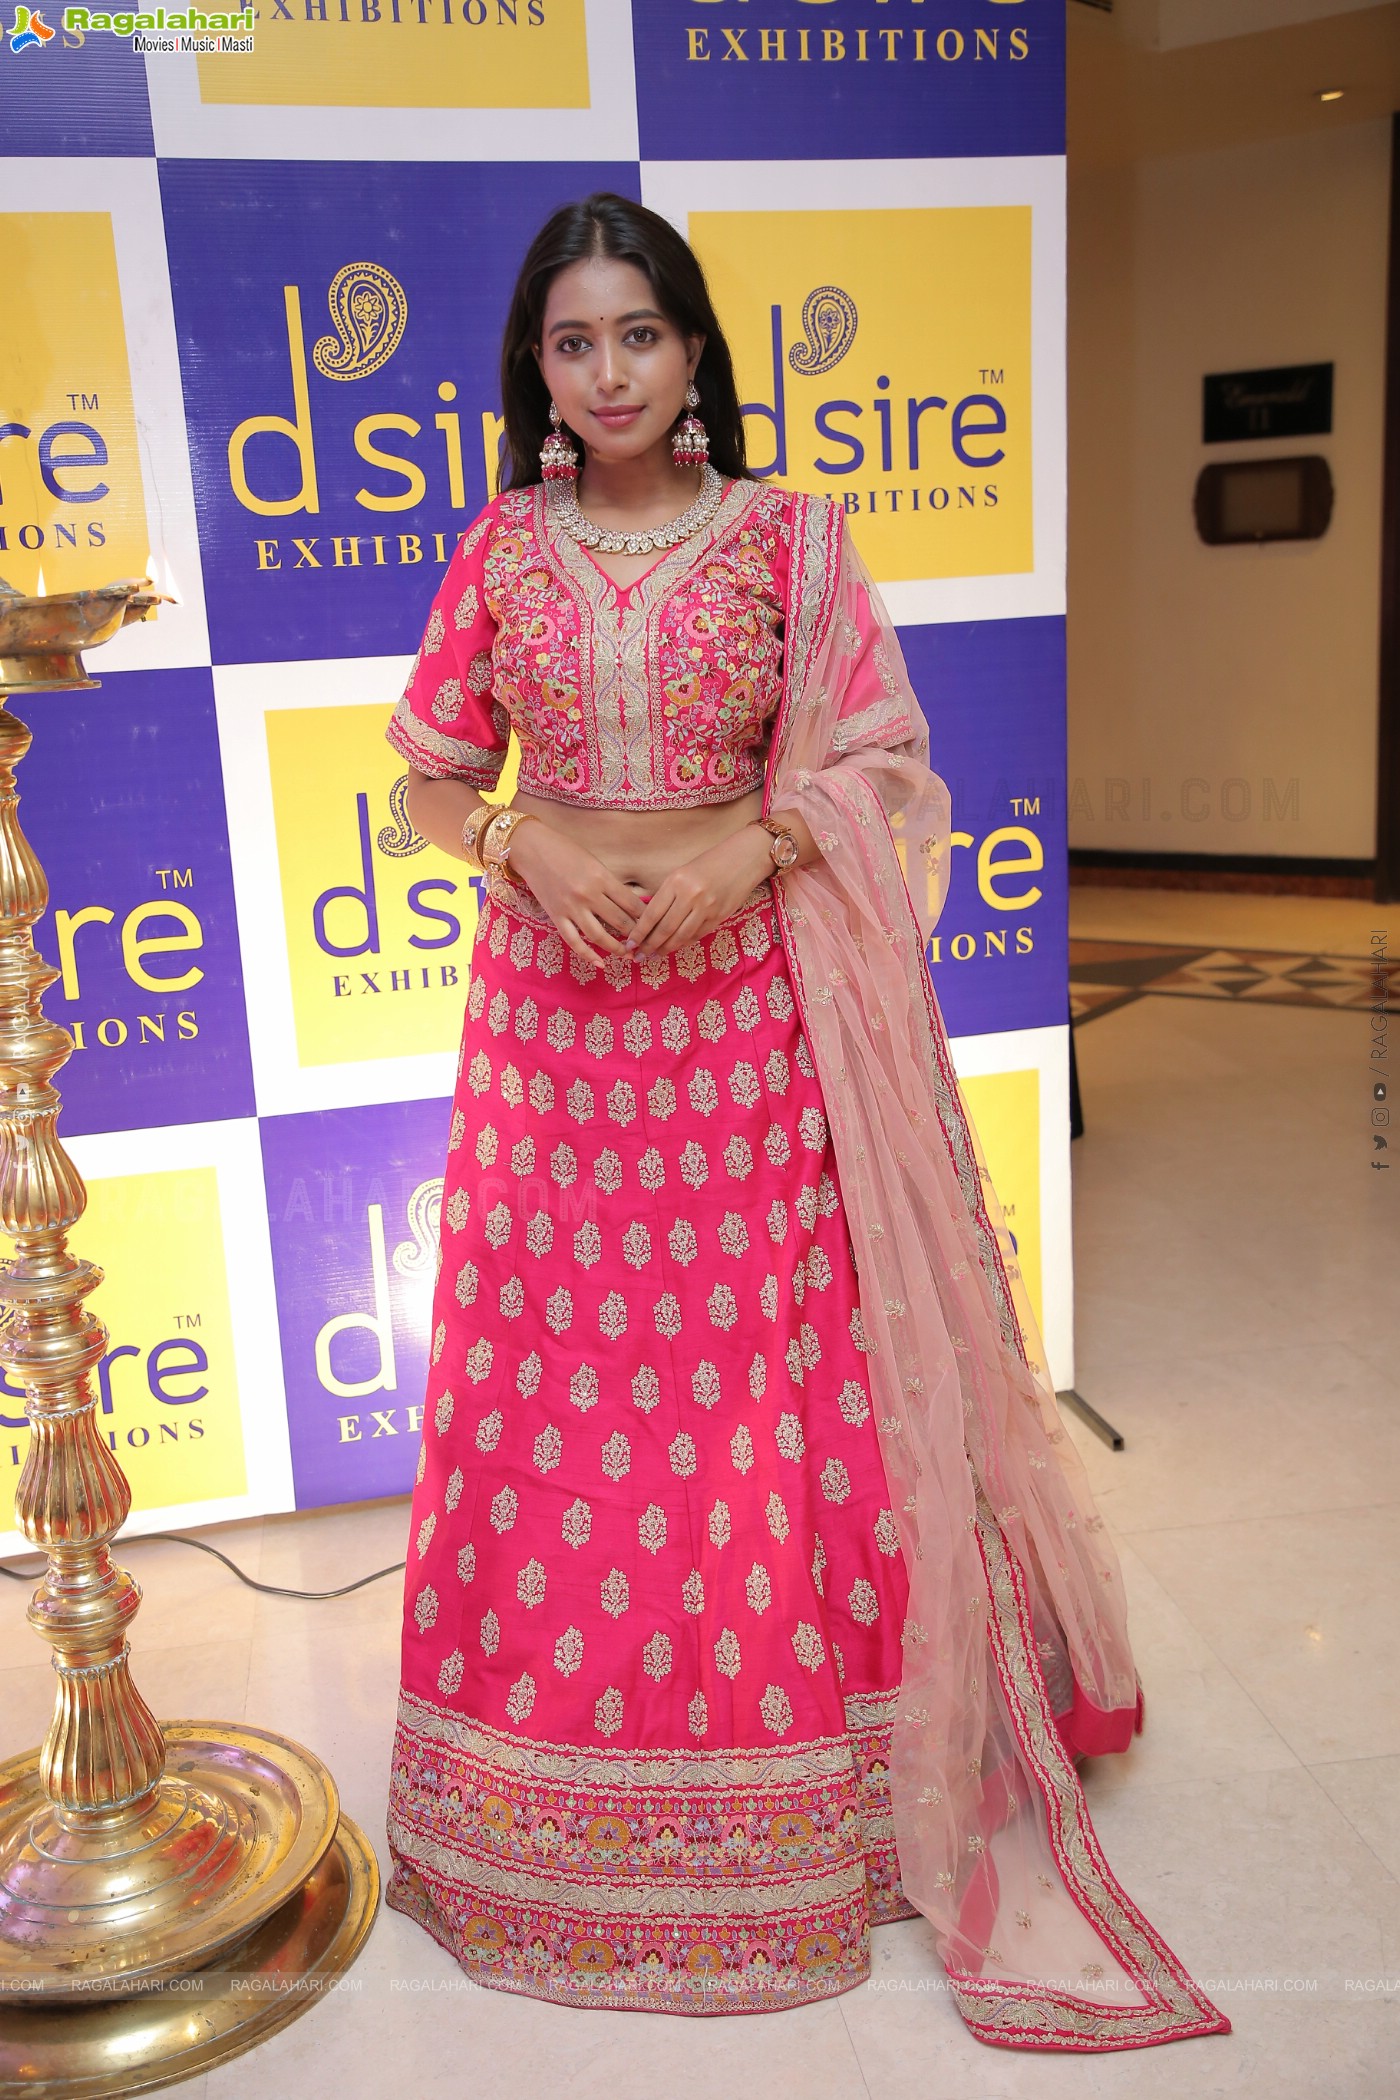 D'sire Designer Exhibition June 2022 Kicks Off at Taj Krishna, Hyderabad